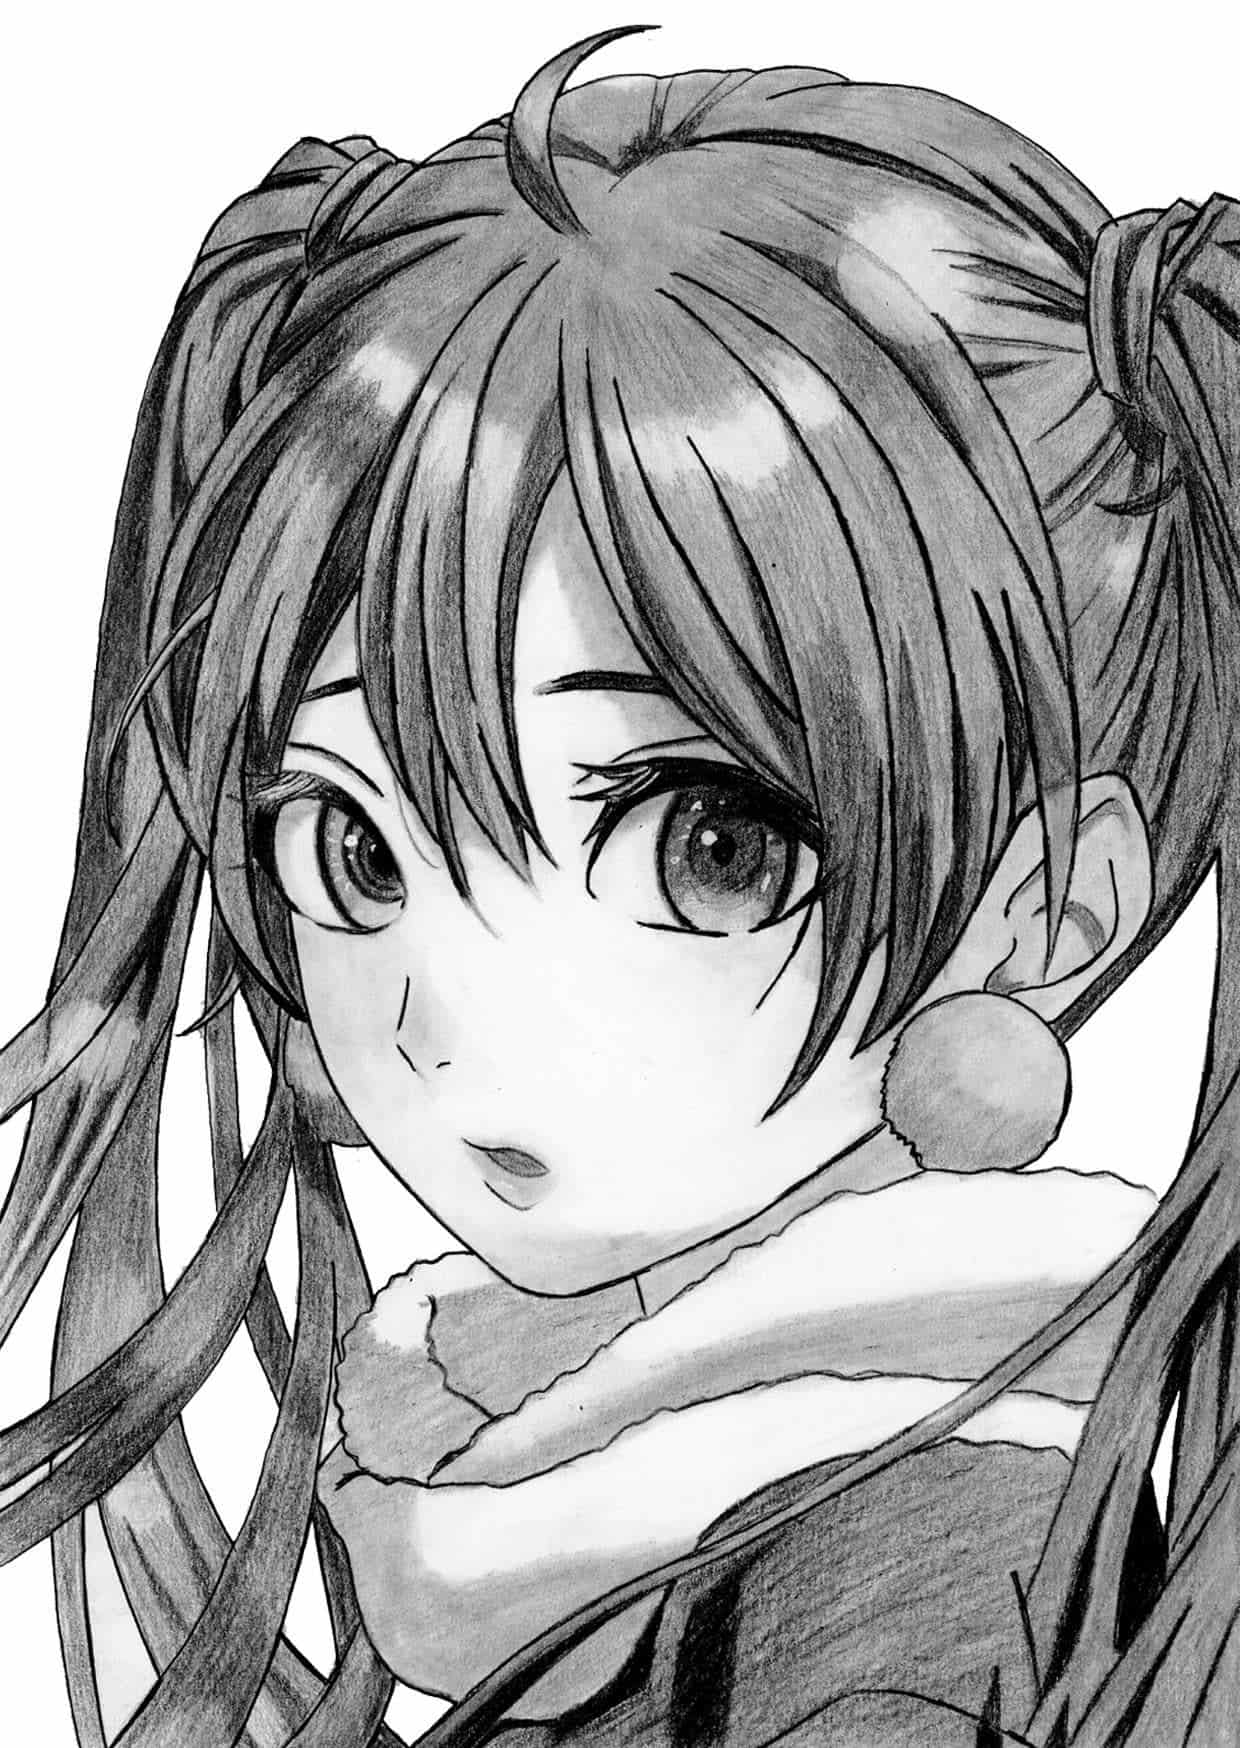 Vẽ Anime Girl vô cùng đẹp mắt và chất